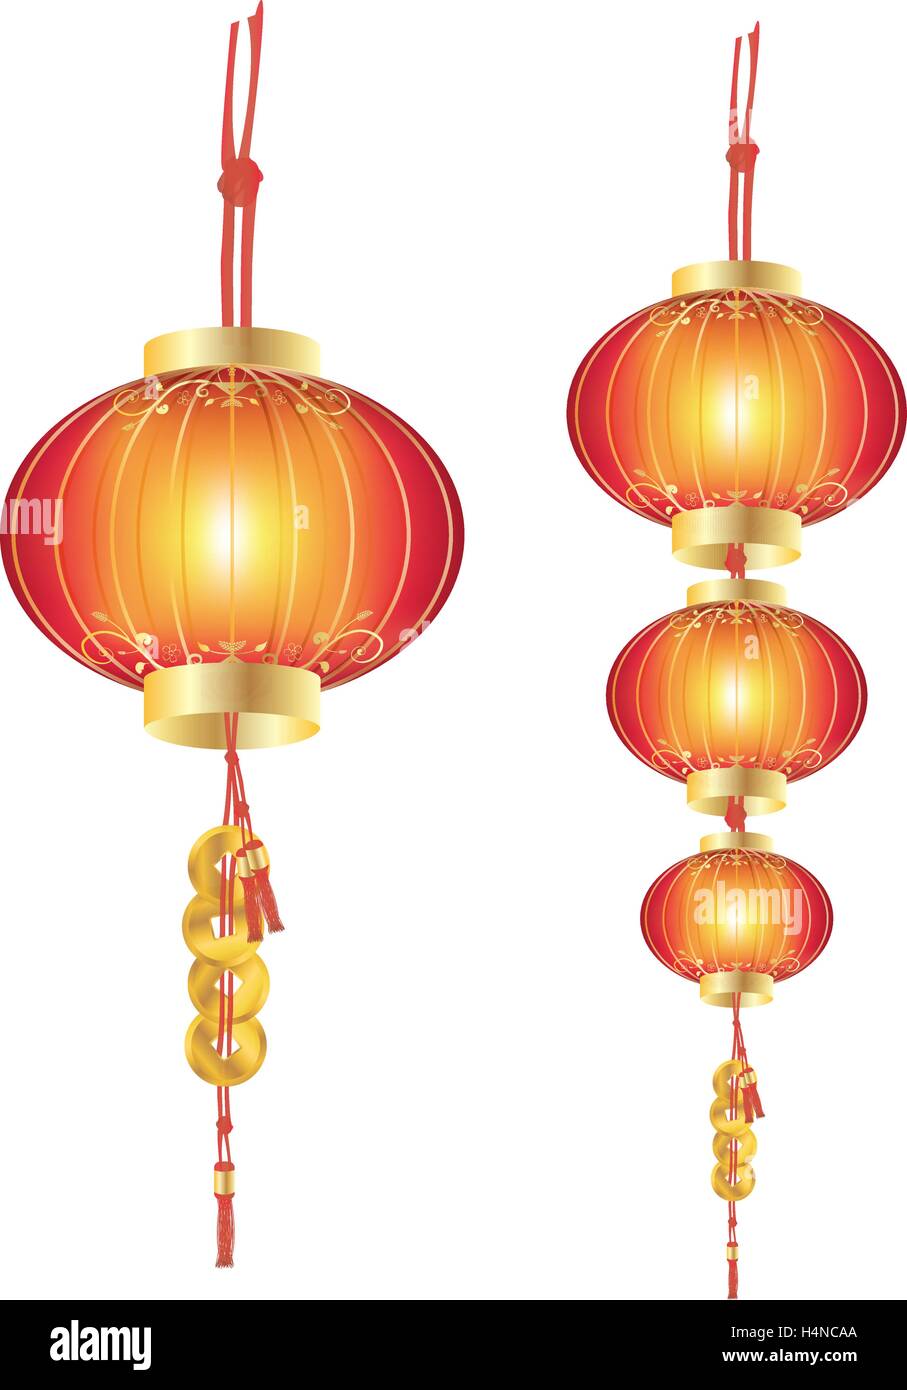 Lanterne chinoise Illustration de Vecteur